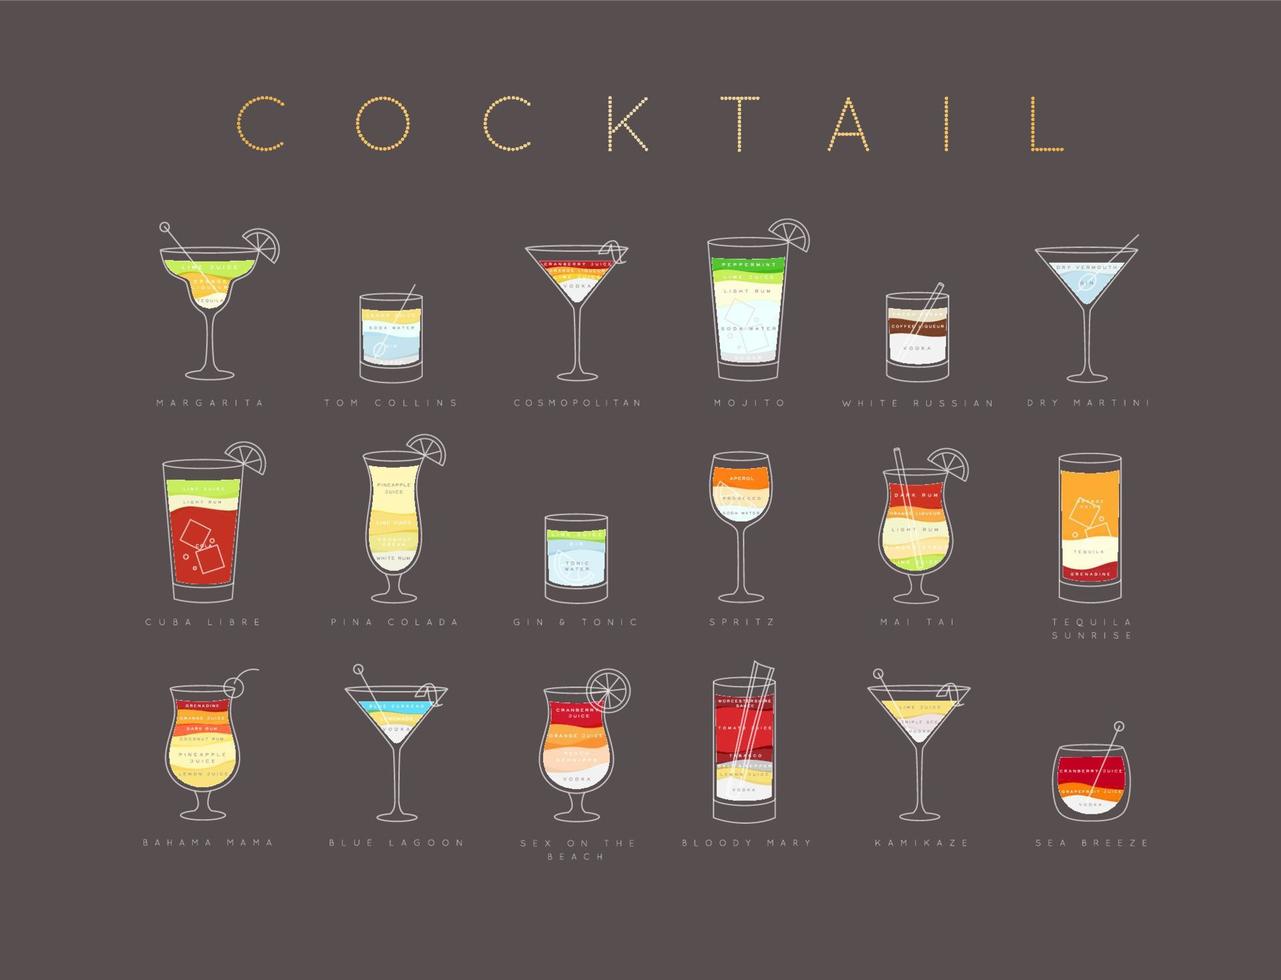 posterflache cocktailkarte mit glas, rezepten und namen von cocktailgetränken, die horizontal auf braunem hintergrund zeichnen vektor